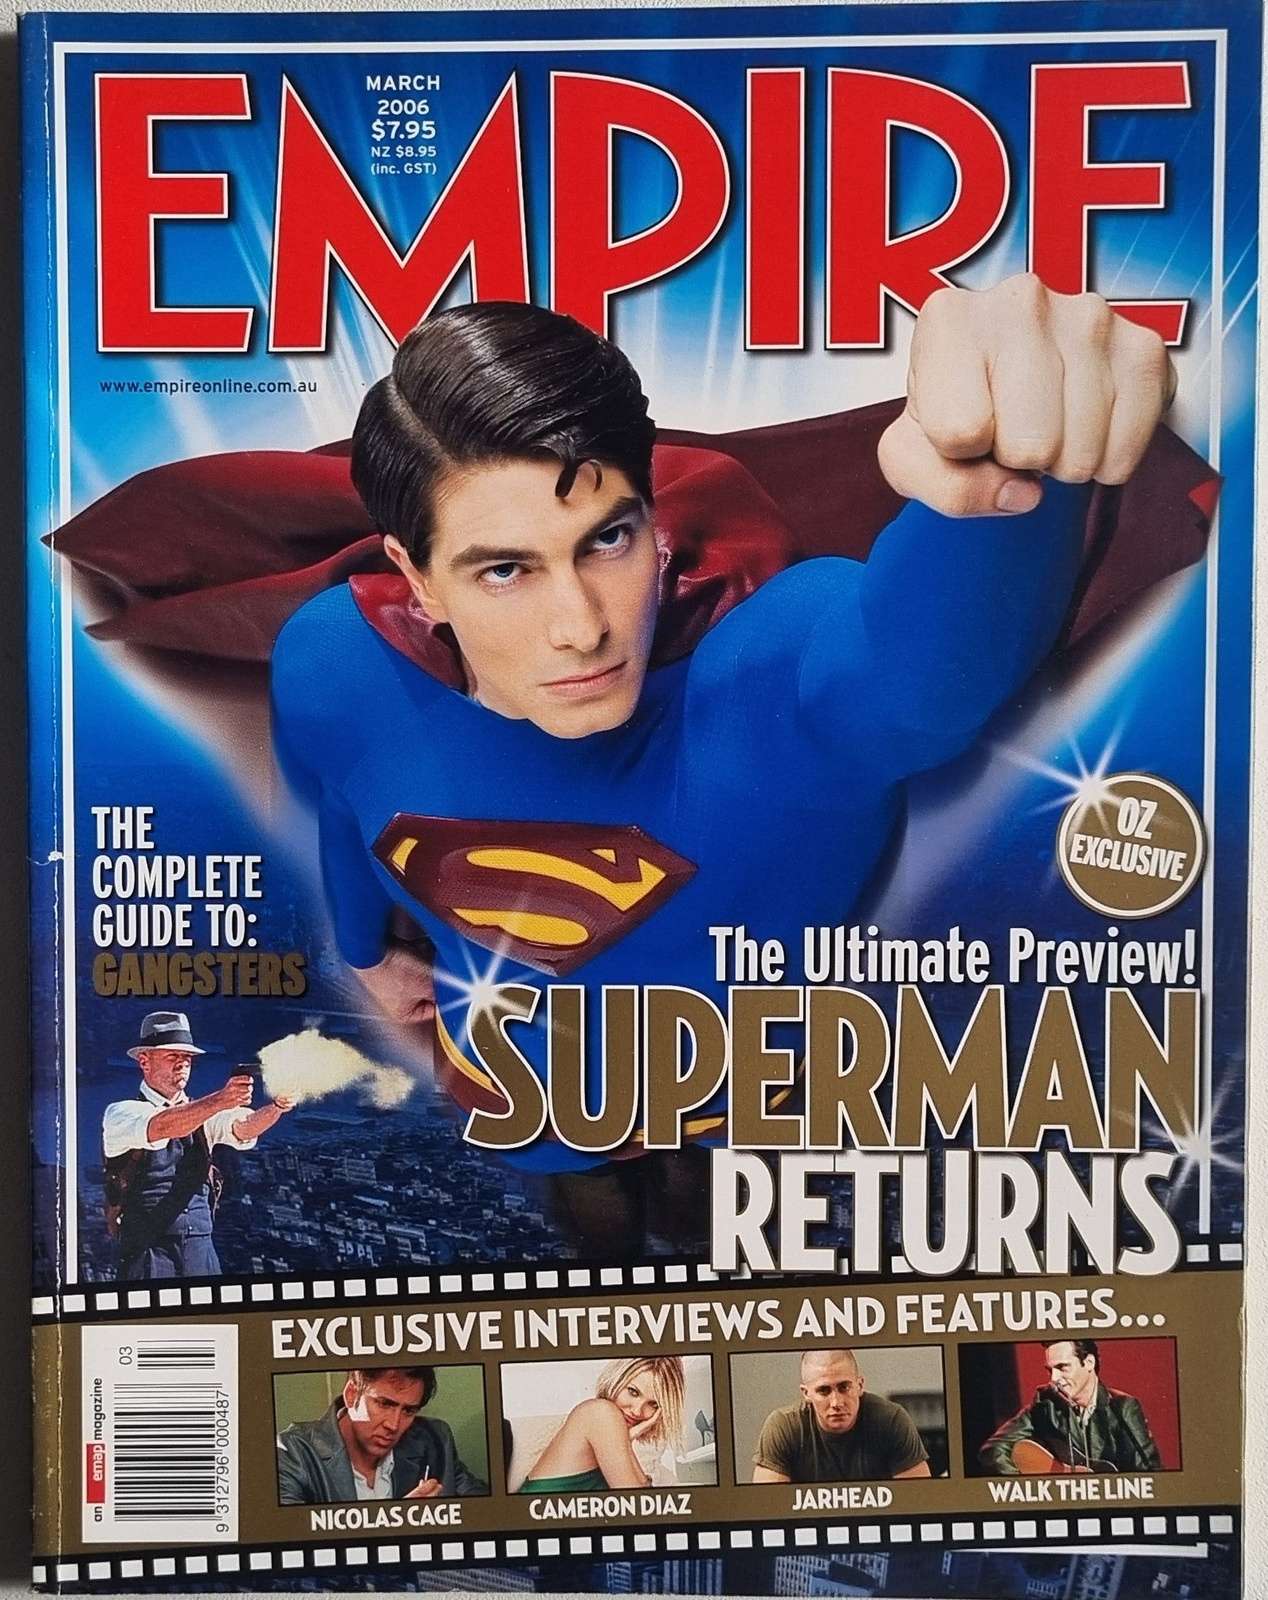 Empire (Australian Edition) March 2006